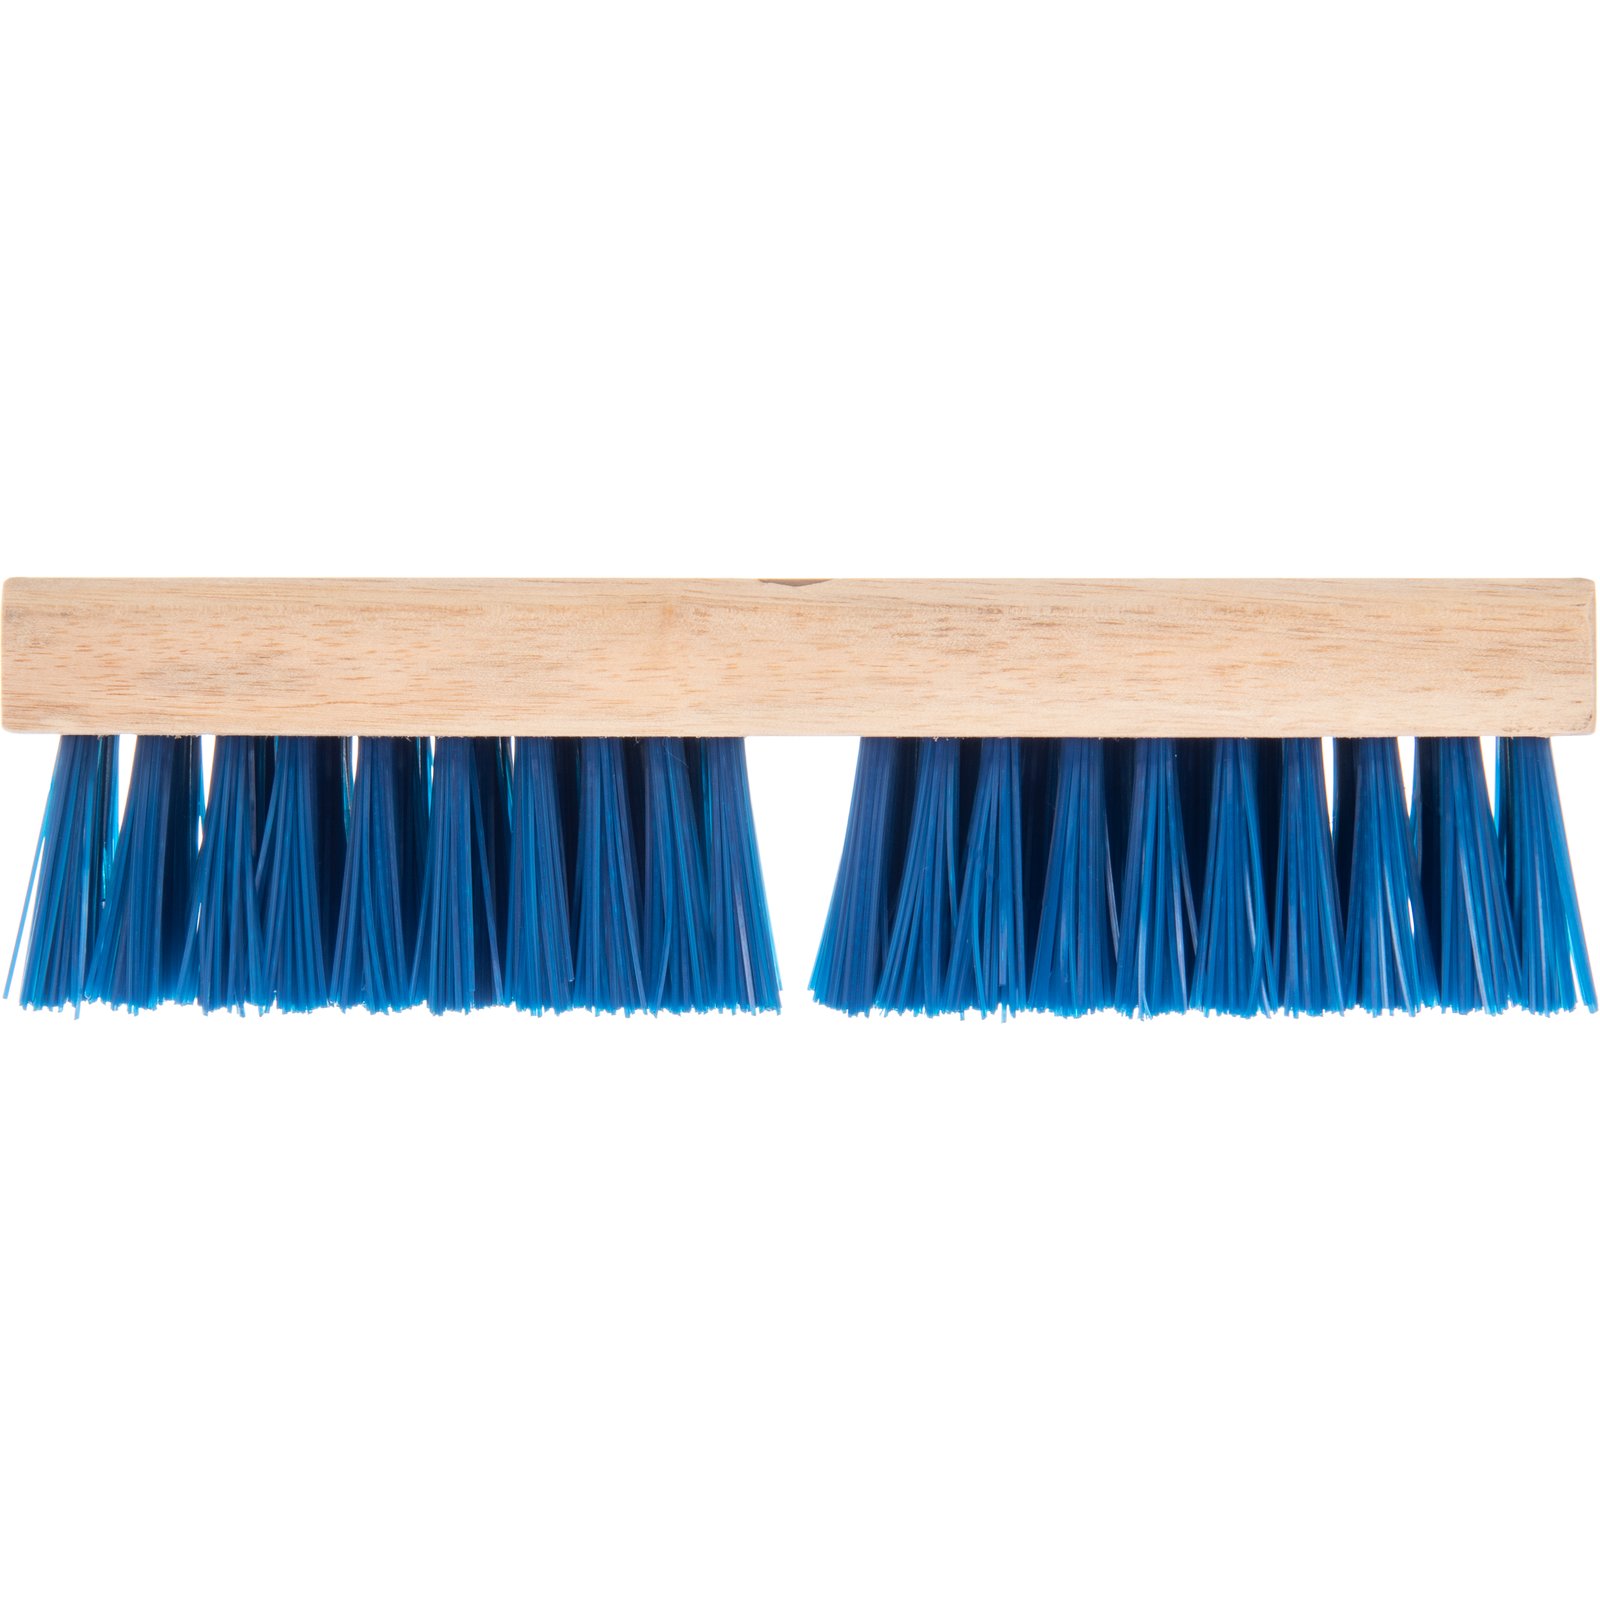 SWOPT 10-in Nylon Stiff Deck Brush